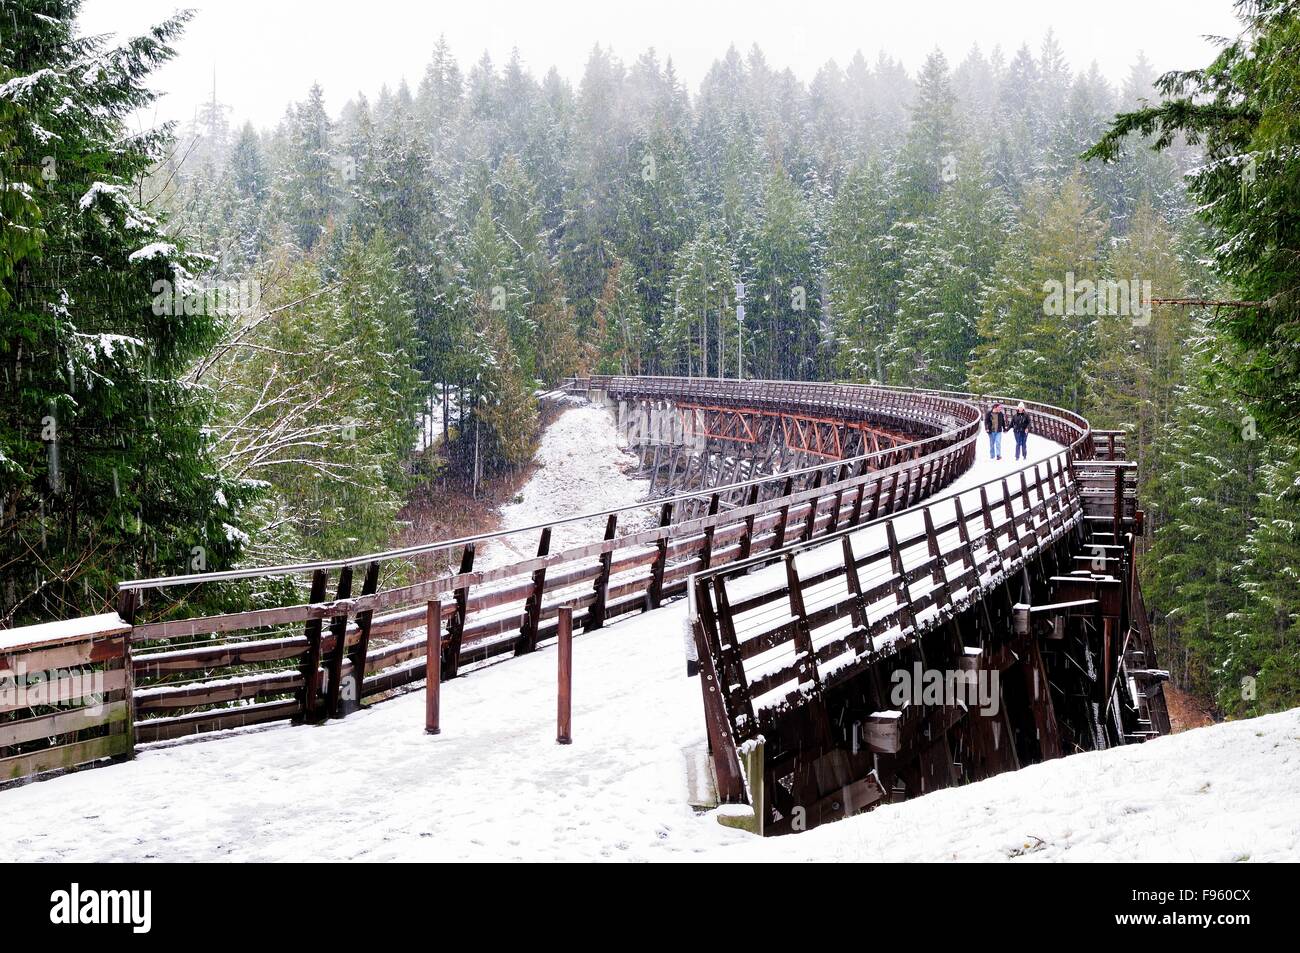 Quelques promenades dans la neige sur le pont sur chevalets Kinsol près de Shawnigan Lake, BC. Banque D'Images